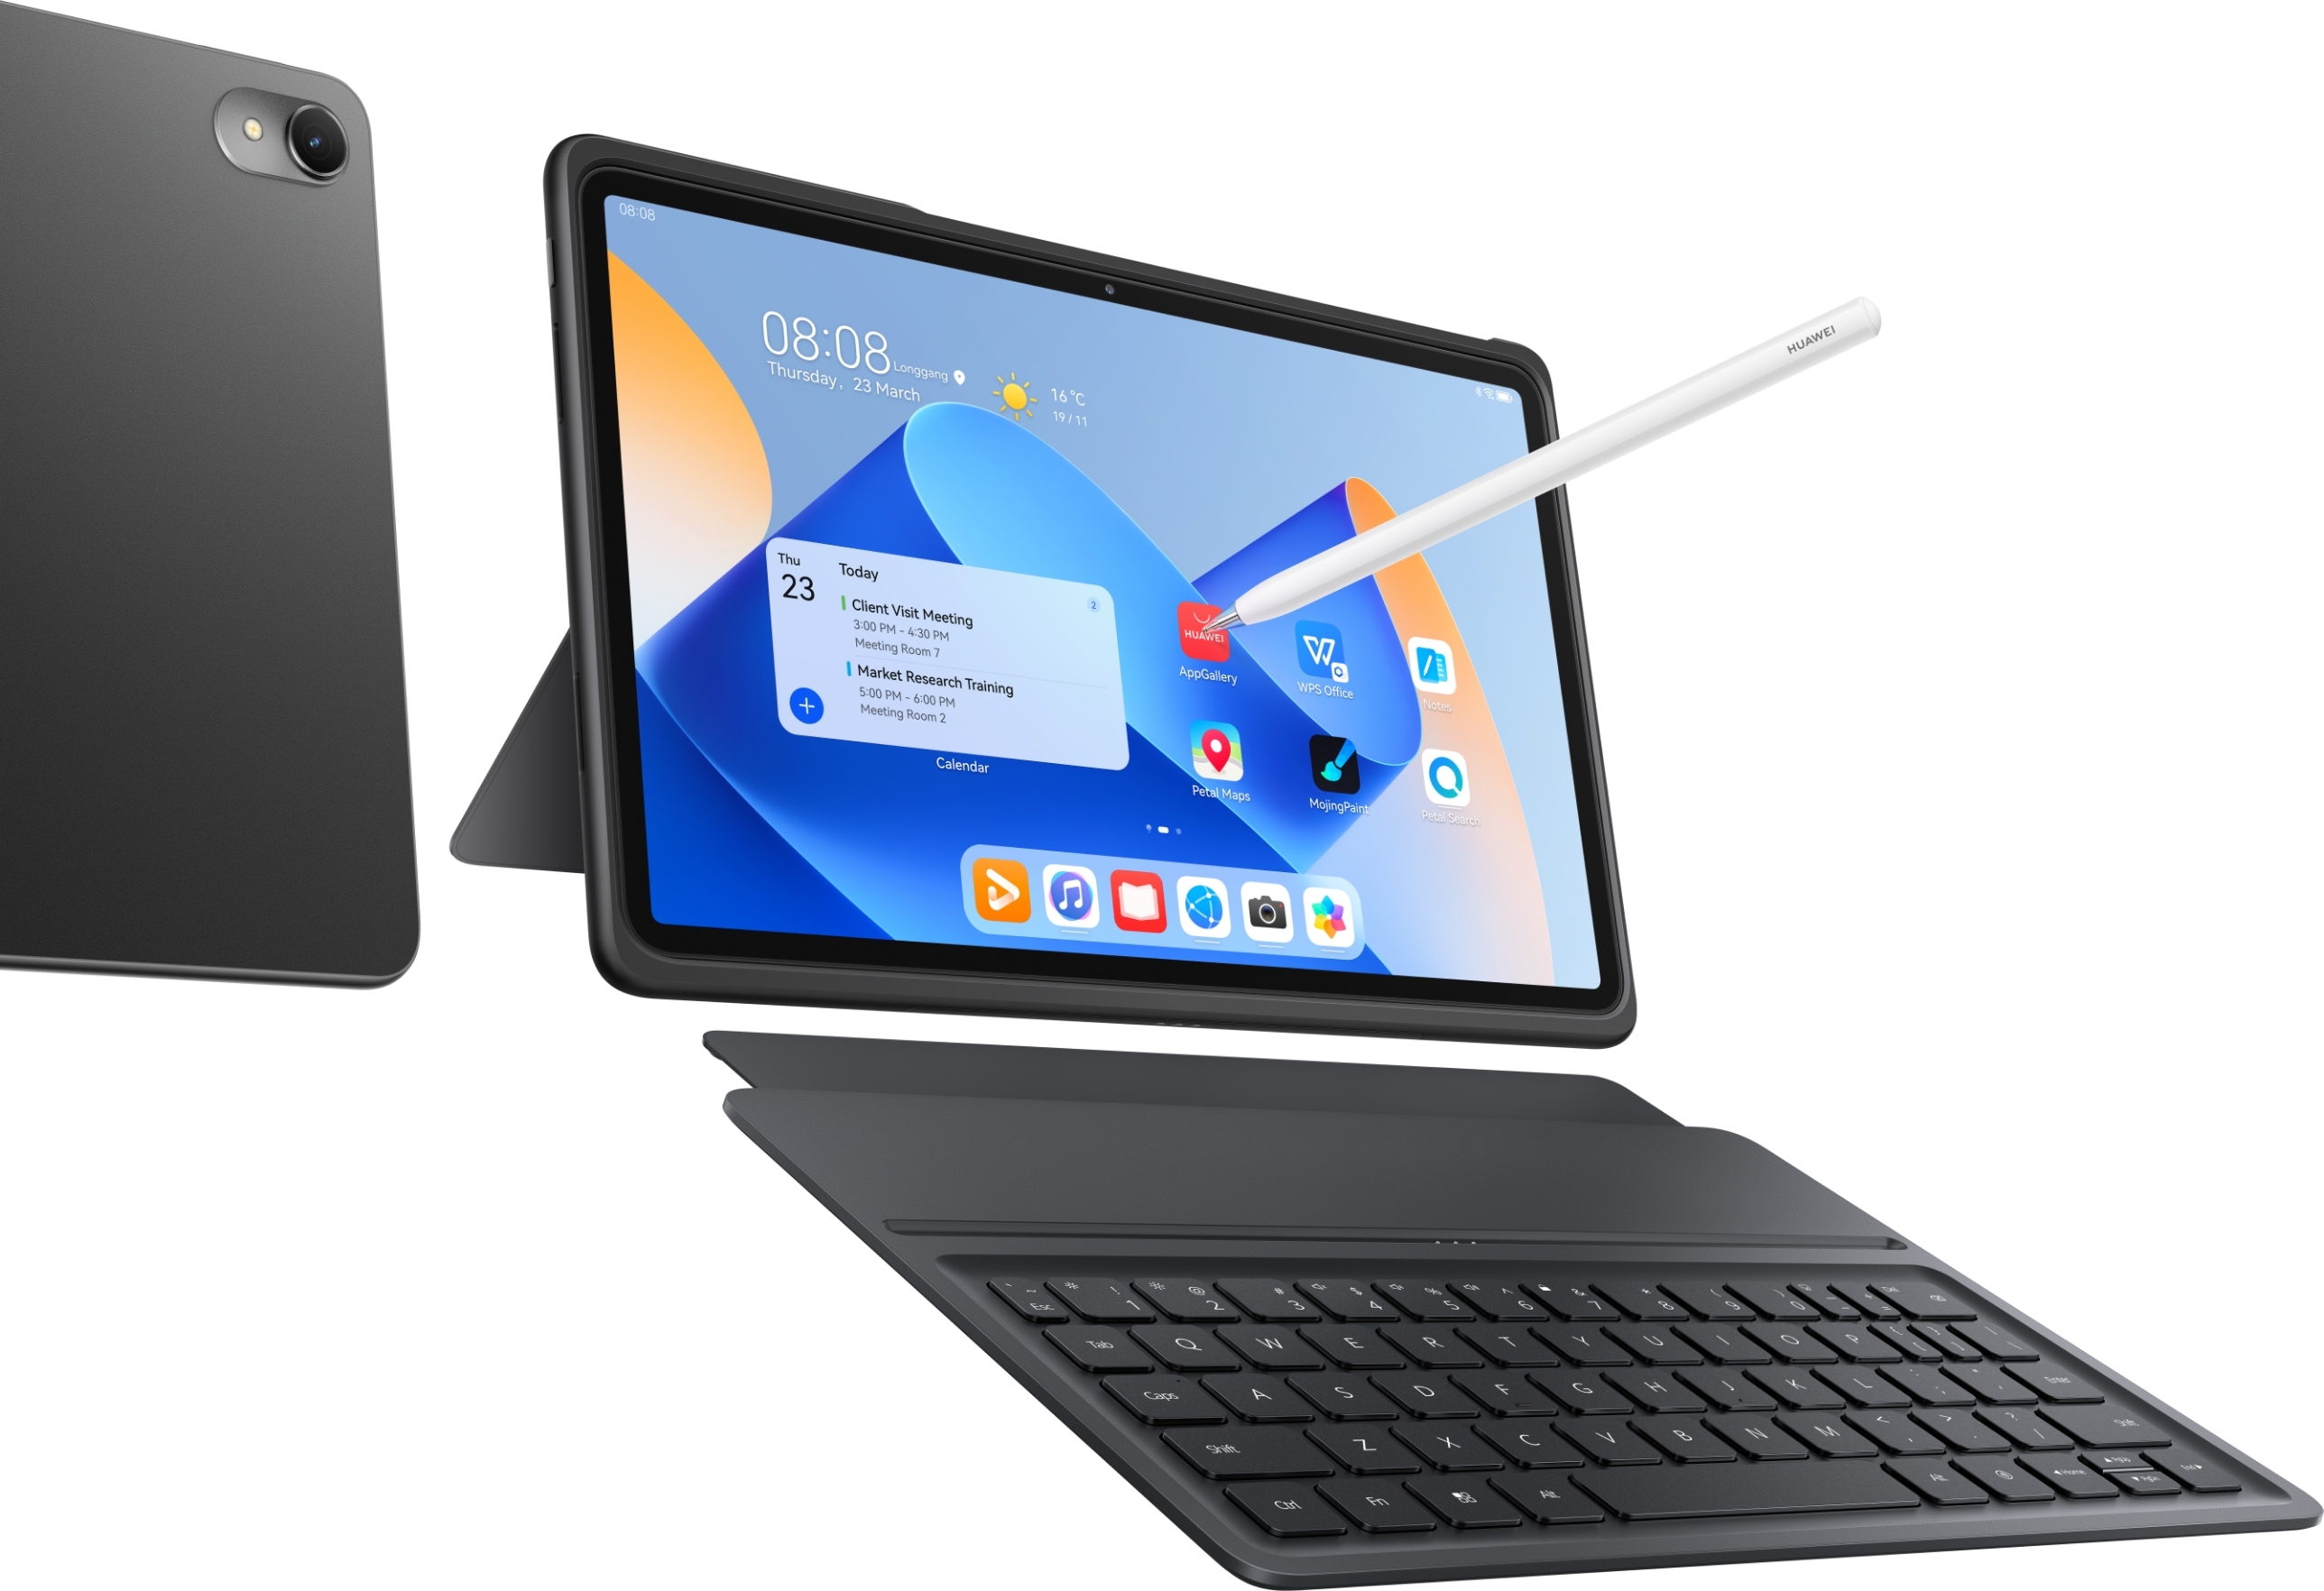 HUAWEI MatePad 11, Tablet Fleksibel Cocok Digunakan untuk Work for Anywhere! Harga Rp6 Jutaan